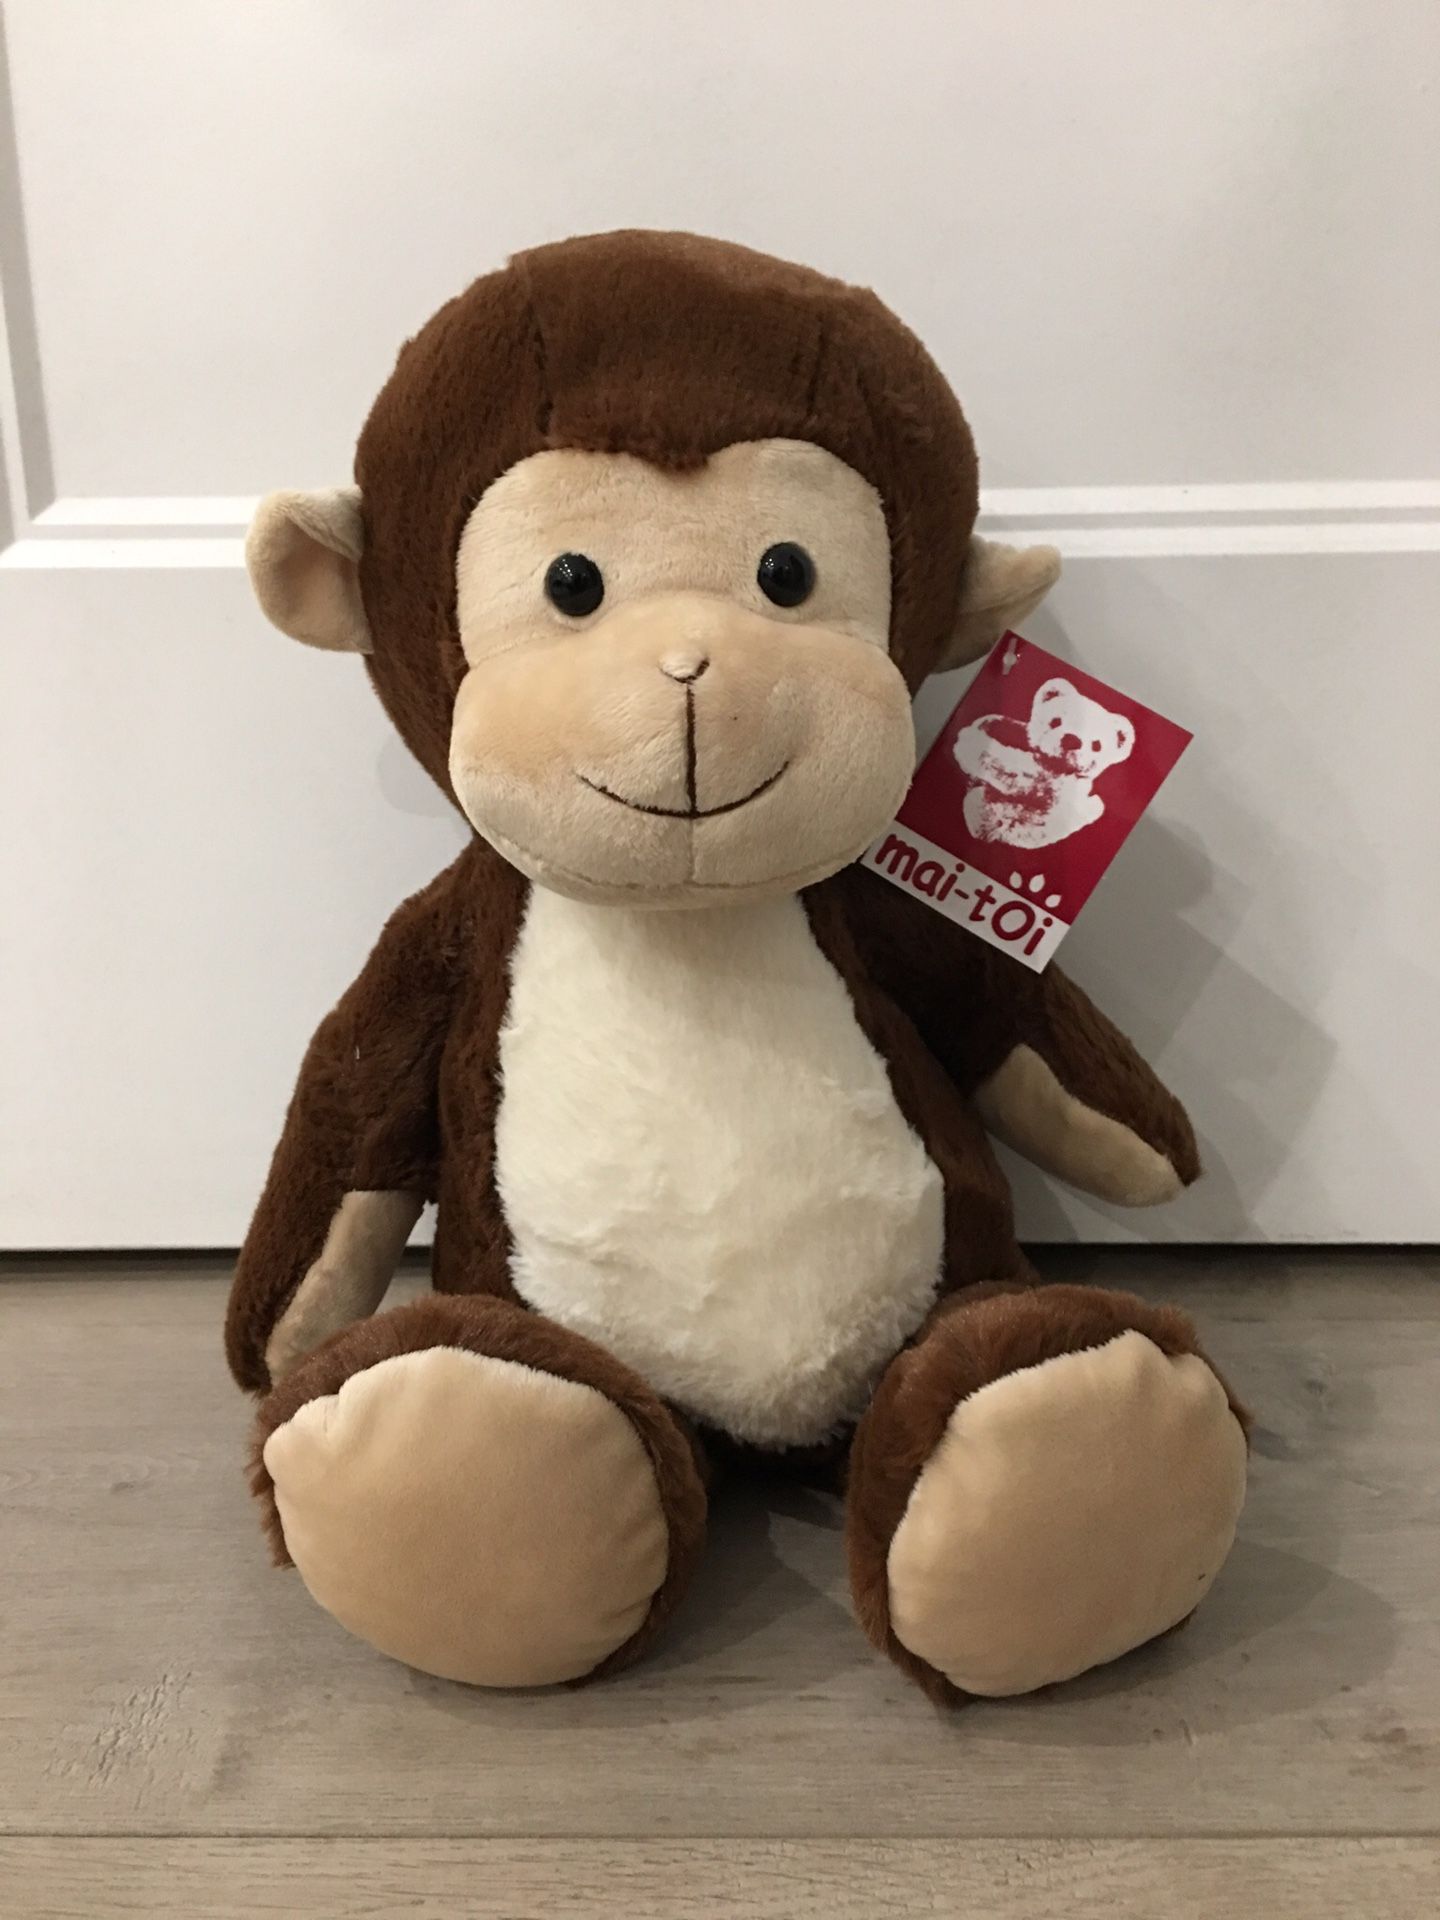 Brand New Monkey Plush Stuffed Animal 10”